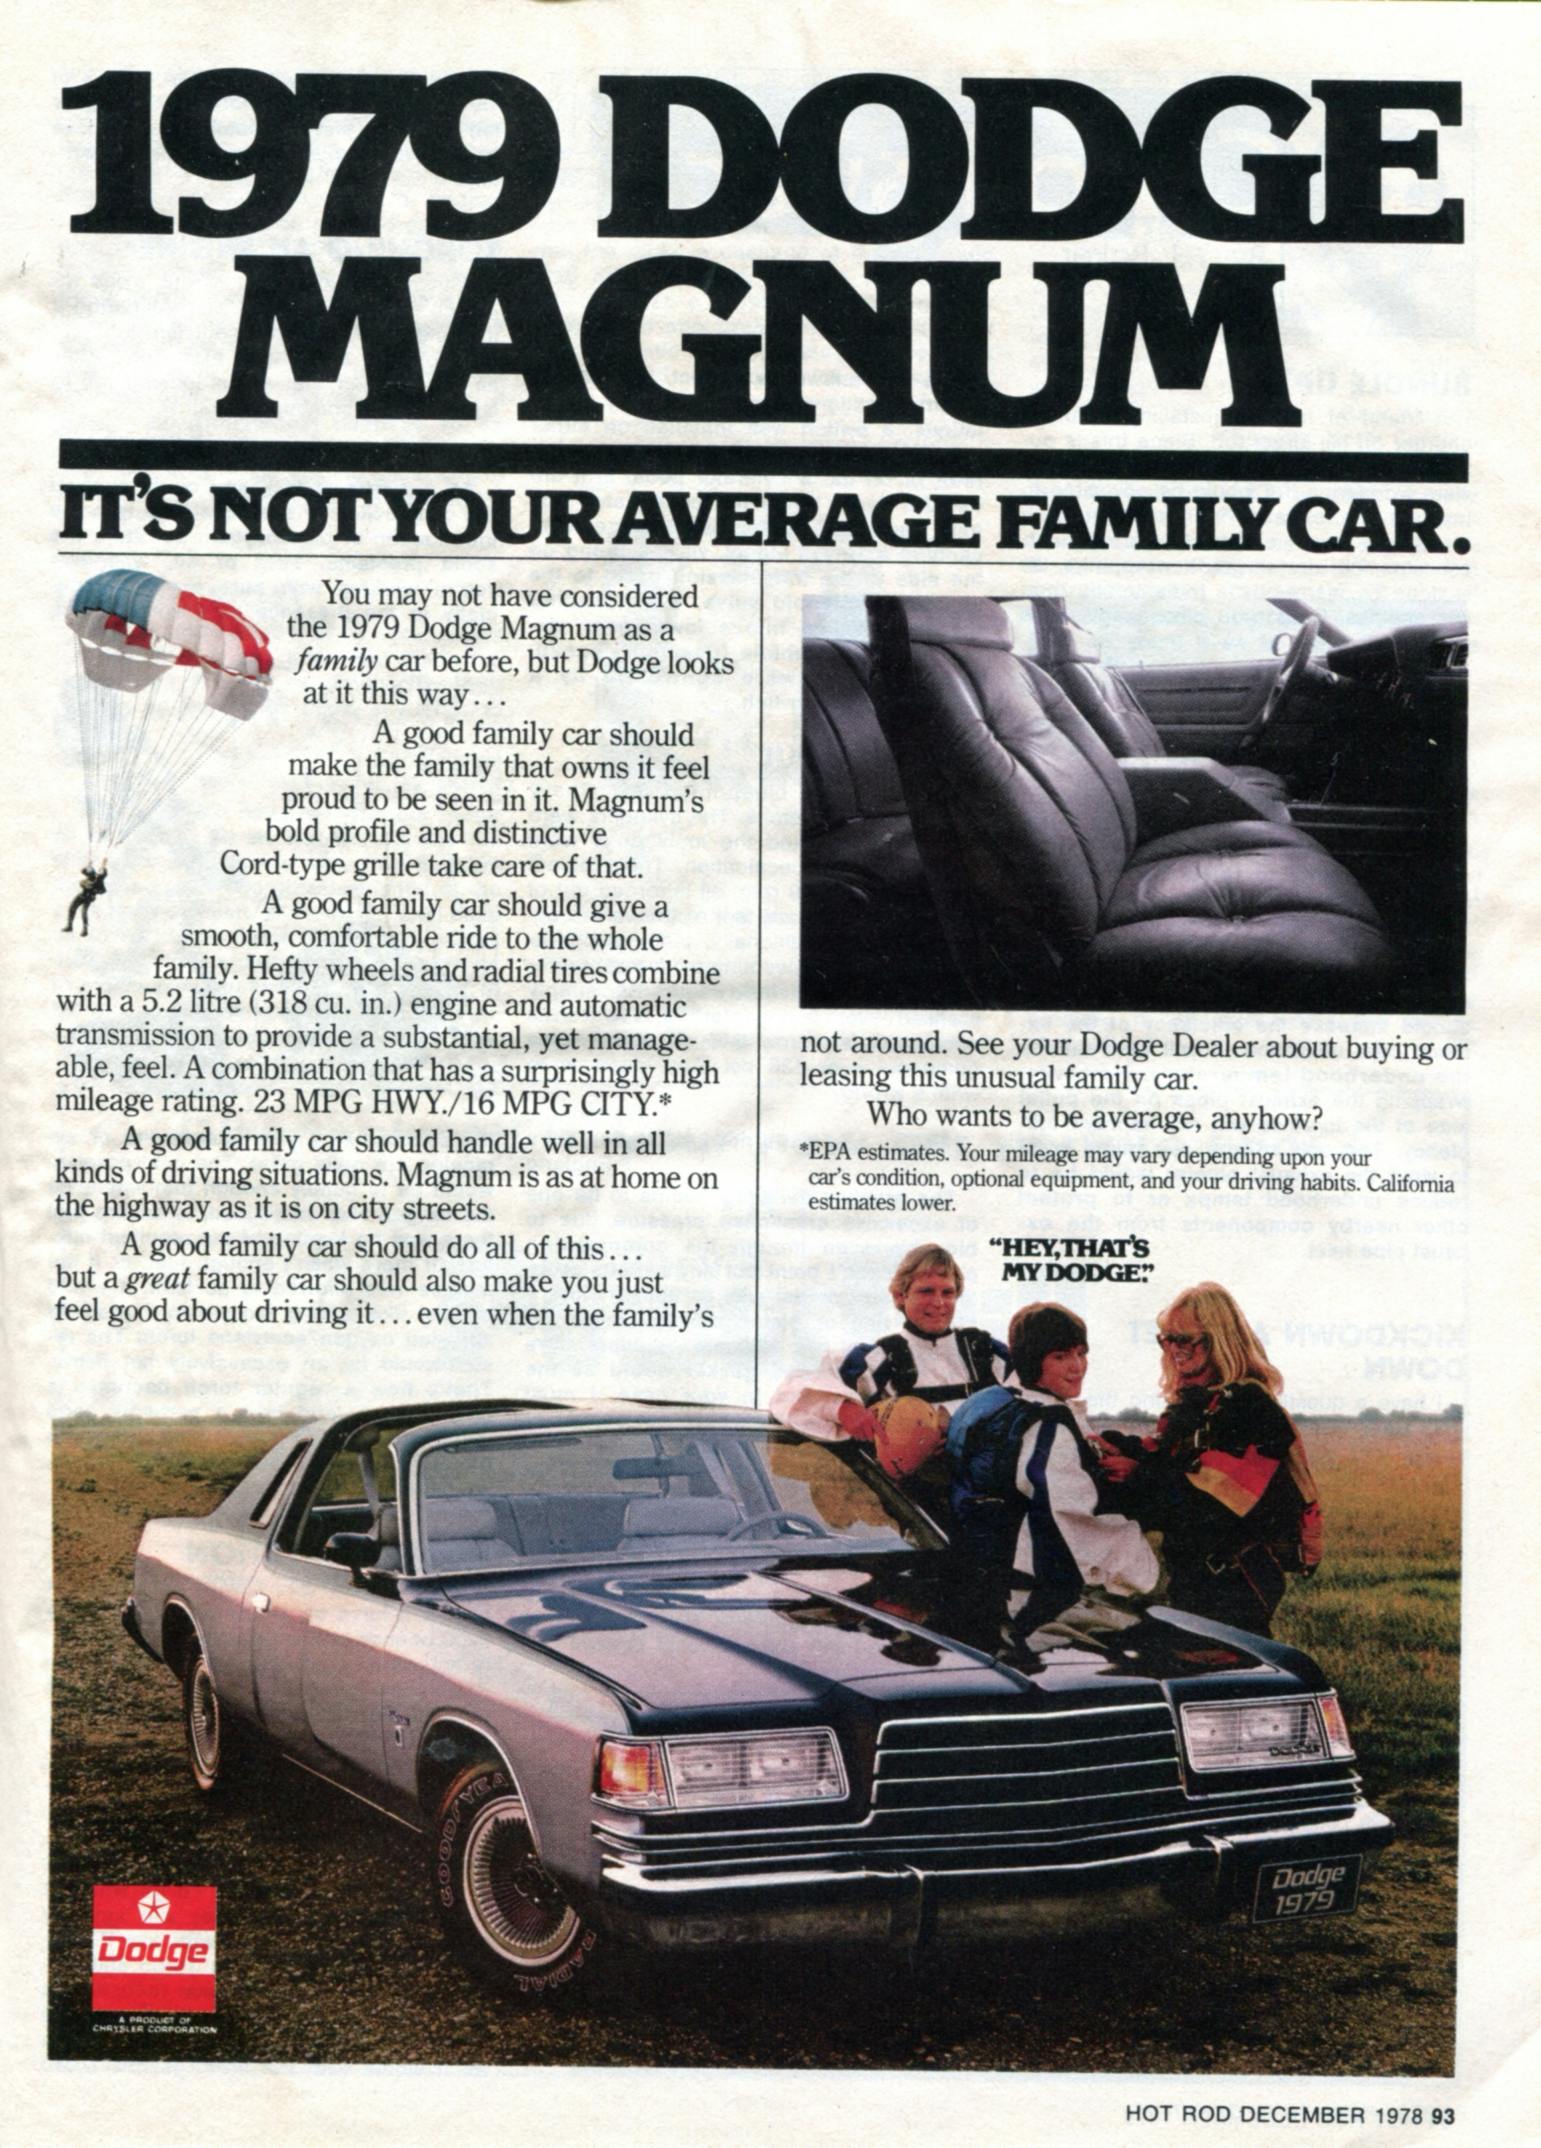 1979 Dodge Magnum family car ad